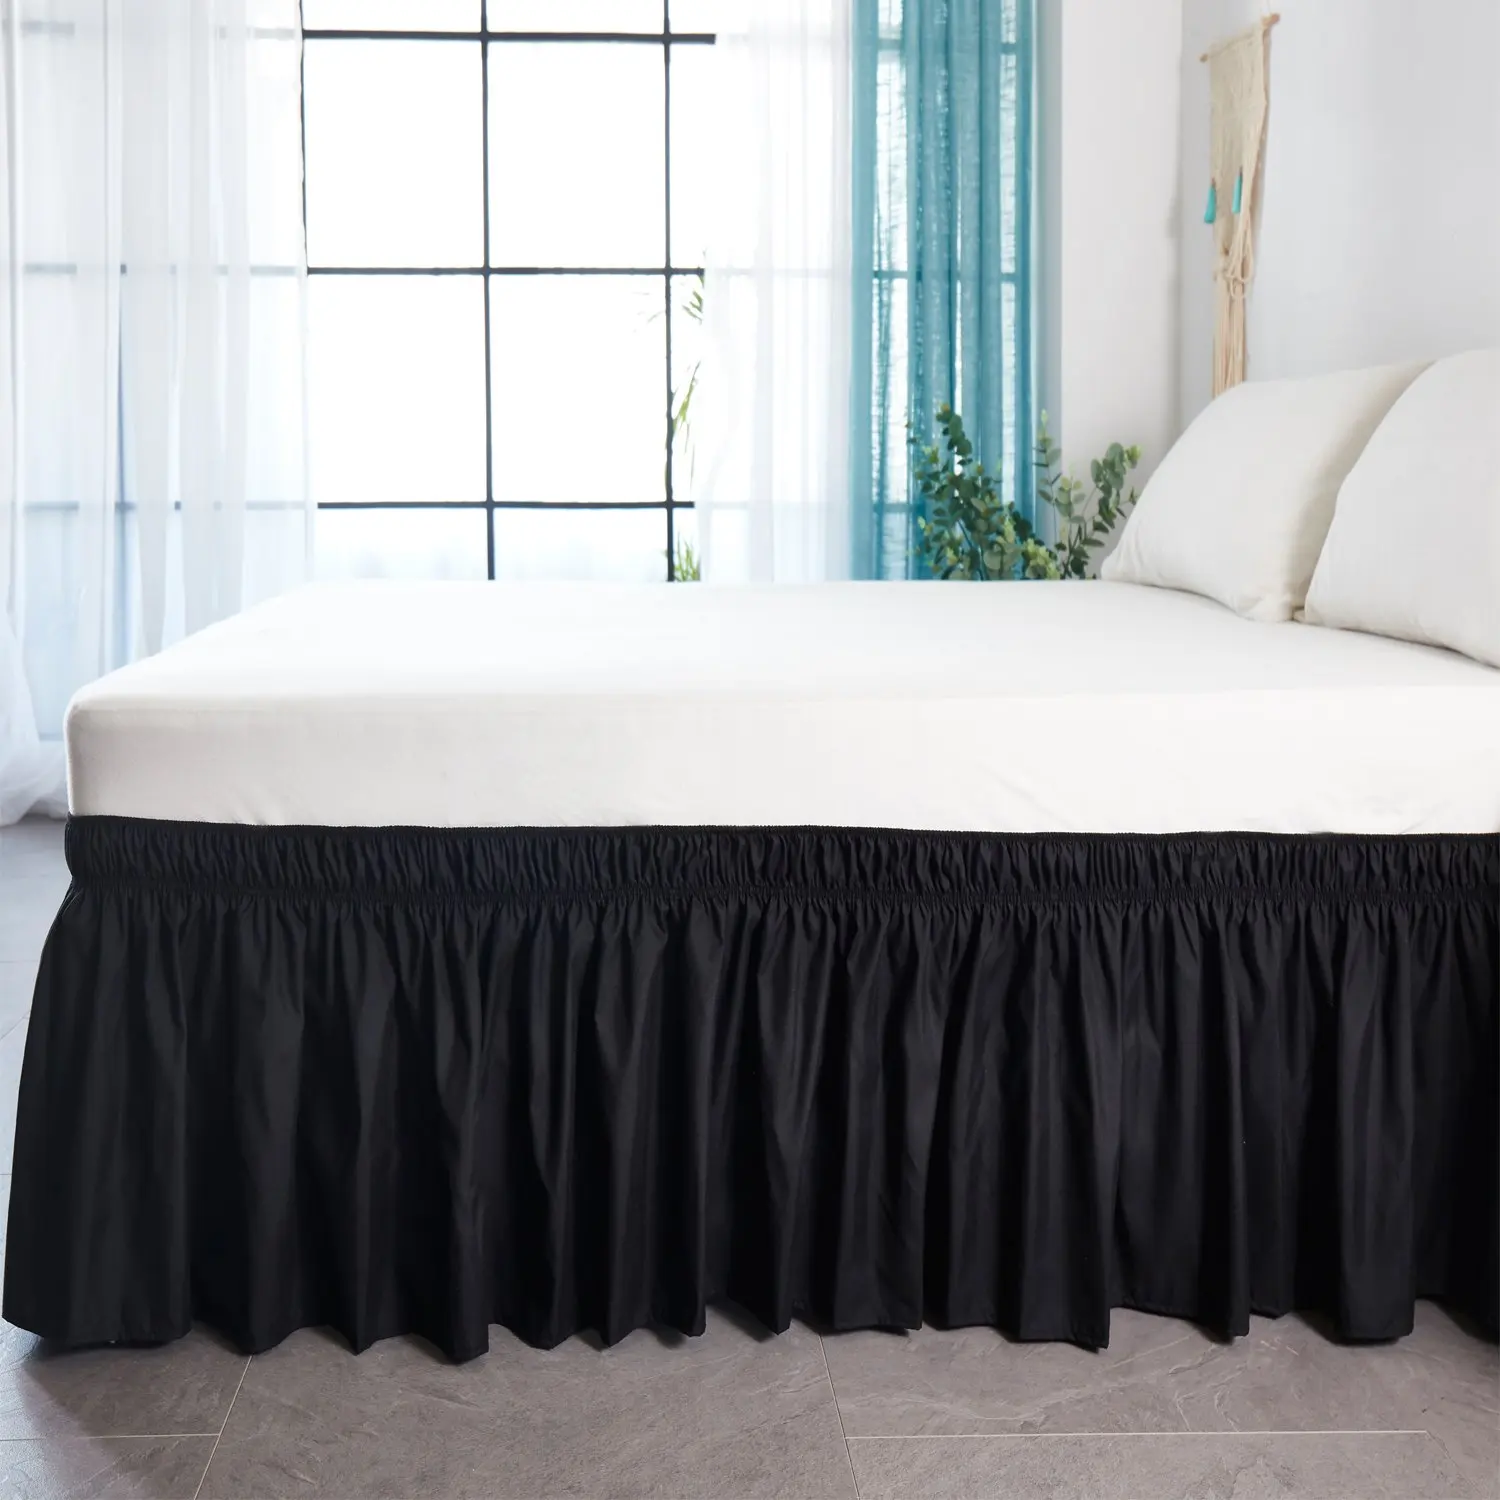 Юбка-кровать белая обмотка вокруг эластичных рубашек кровати без поверхности кровати Твин/Полный/queen/King размер 38 см рост домашнего использования отеля